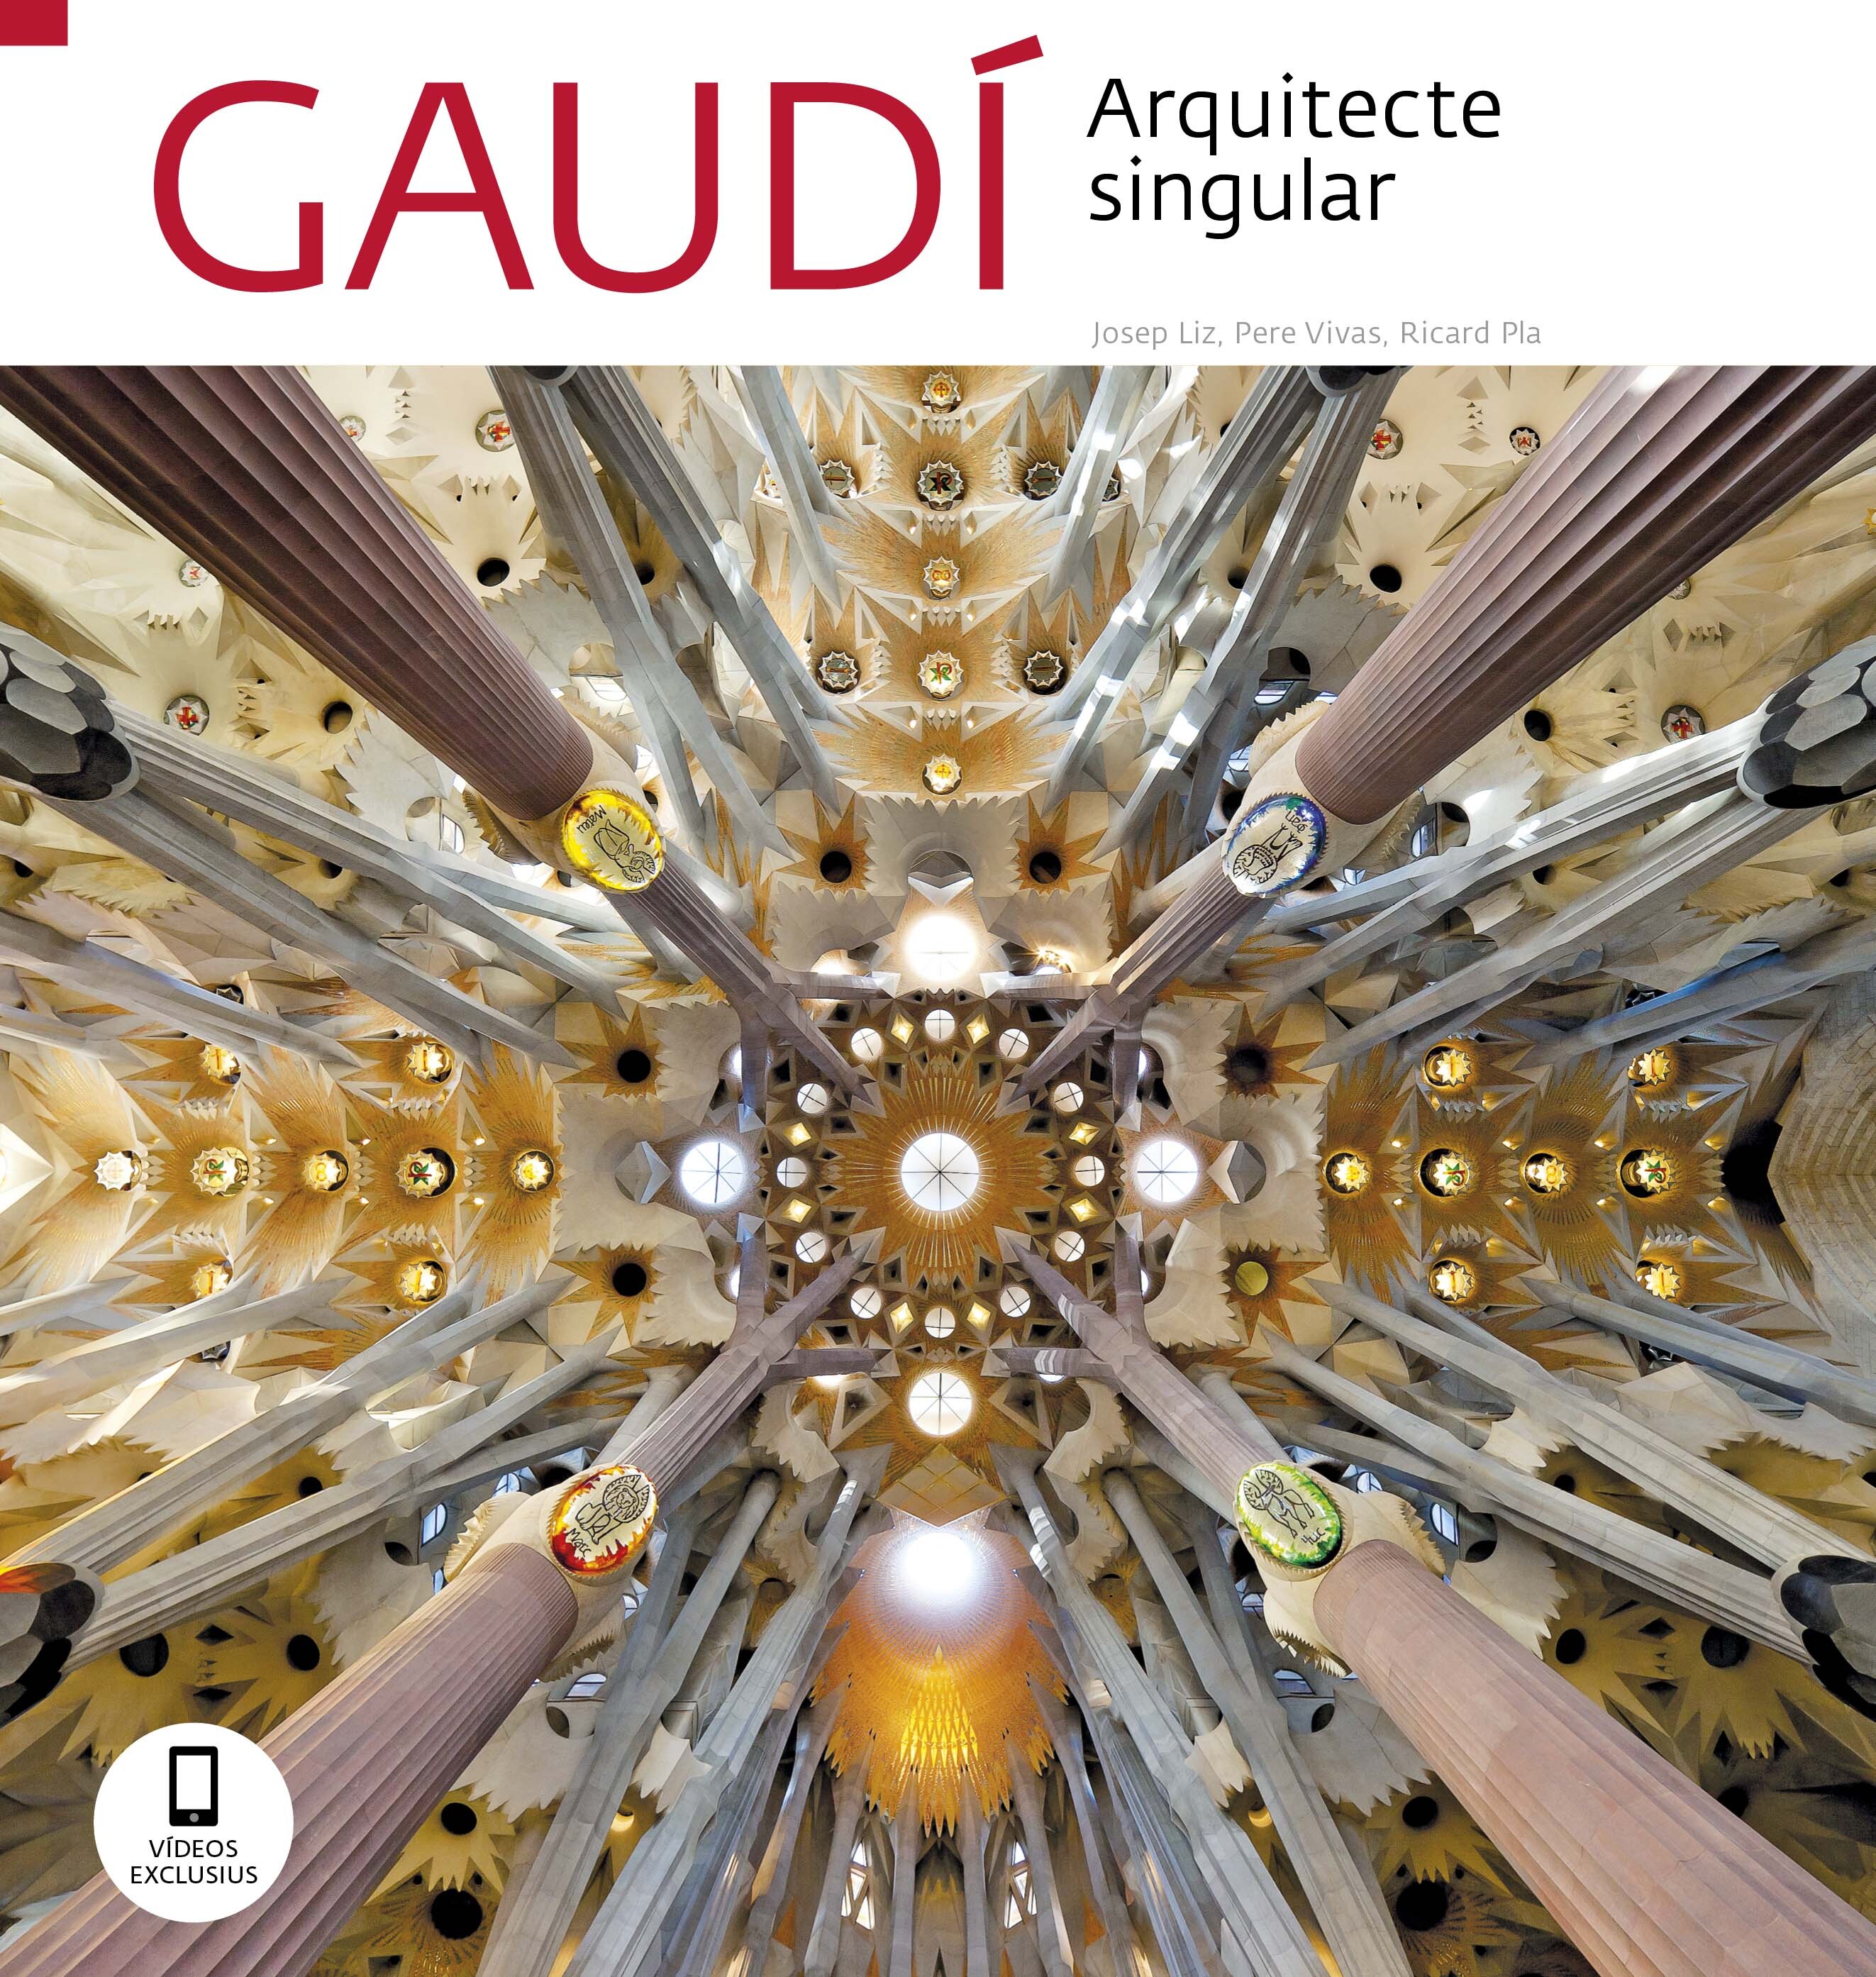 Gaudí Cob s2 Gaudi cat